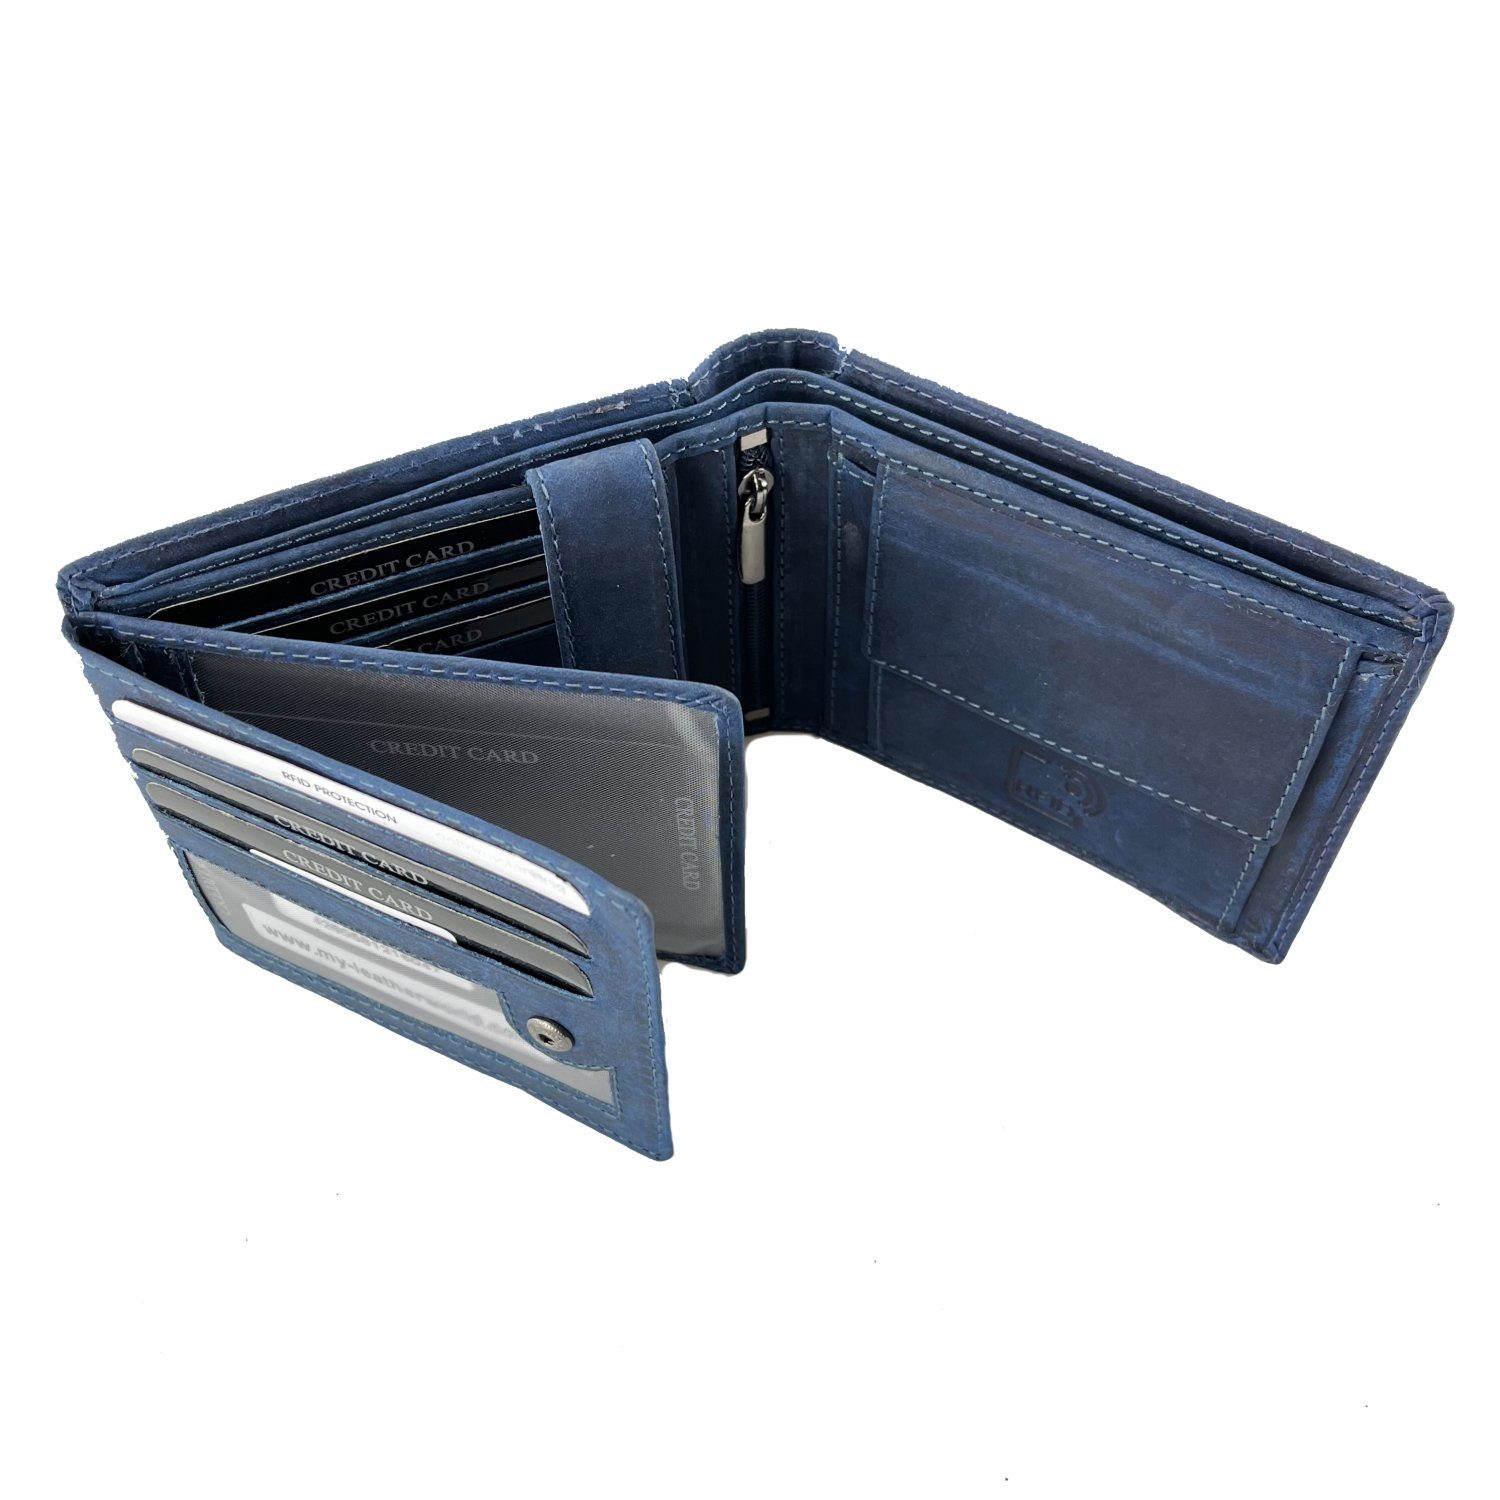 Wallet L&B elegantes 8 in Büffelleder Blau Kartenfächern integrierter im Portemonnaie, Querformat mit Geldbörse RFID-Schutz,